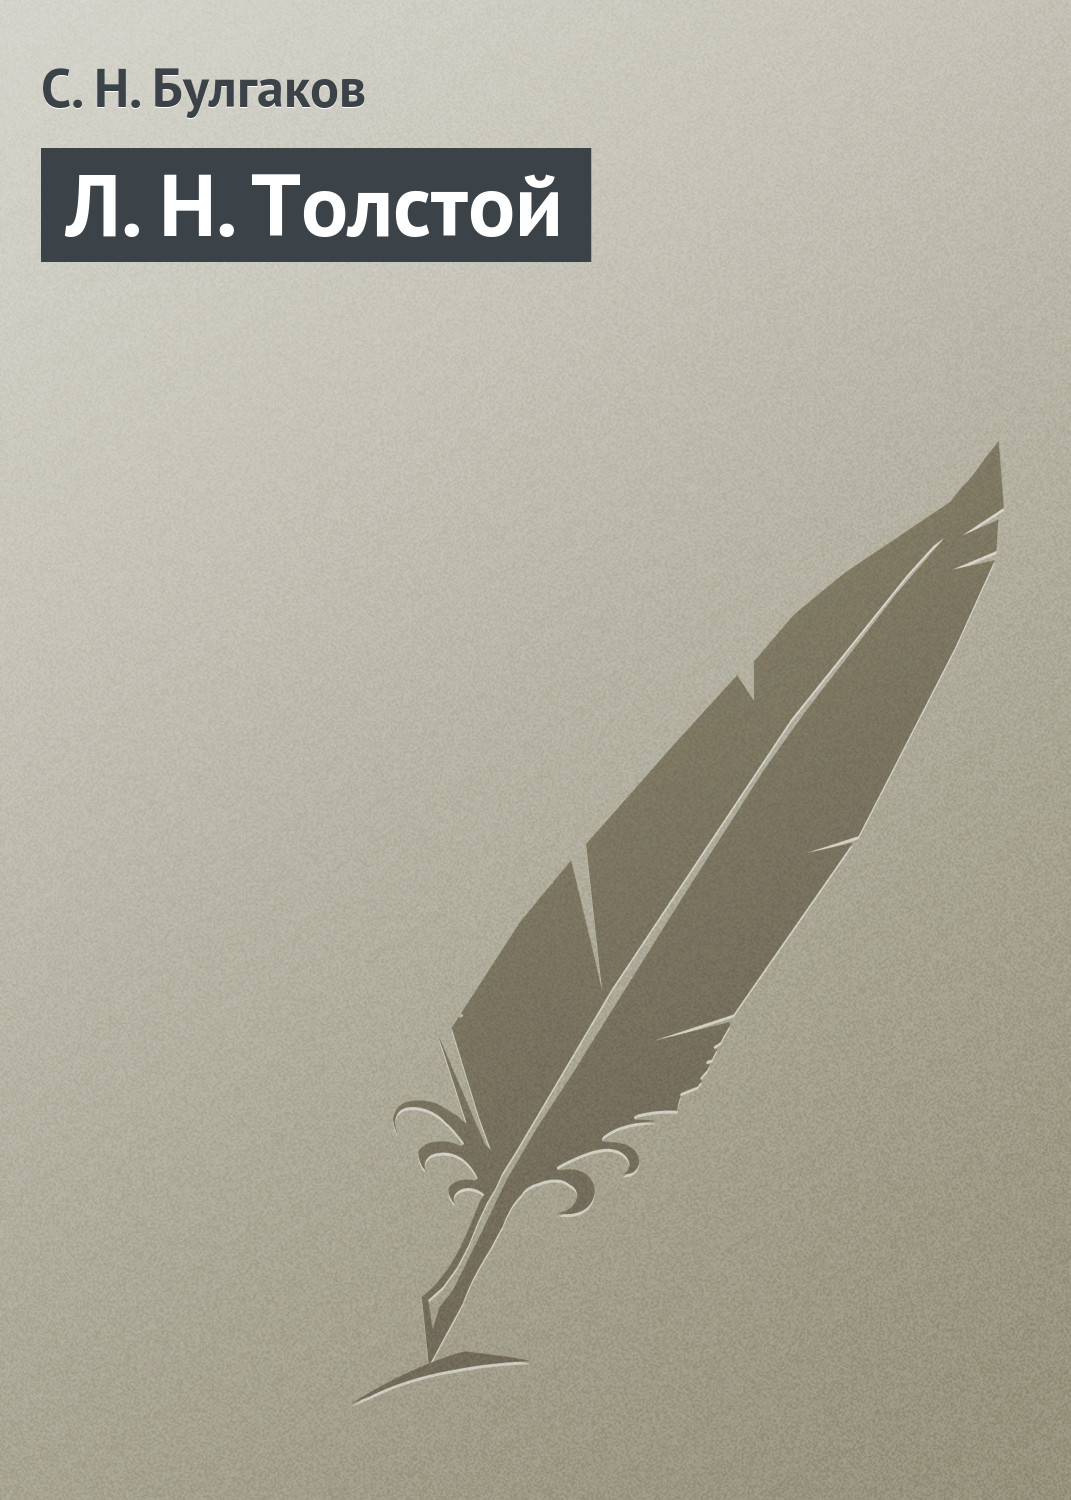 Книга Л. Н. Толстой из серии , созданная Сергей Булгаков, может относится к жанру Критика. Стоимость электронной книги Л. Н. Толстой с идентификатором 18576170 составляет 5.99 руб.